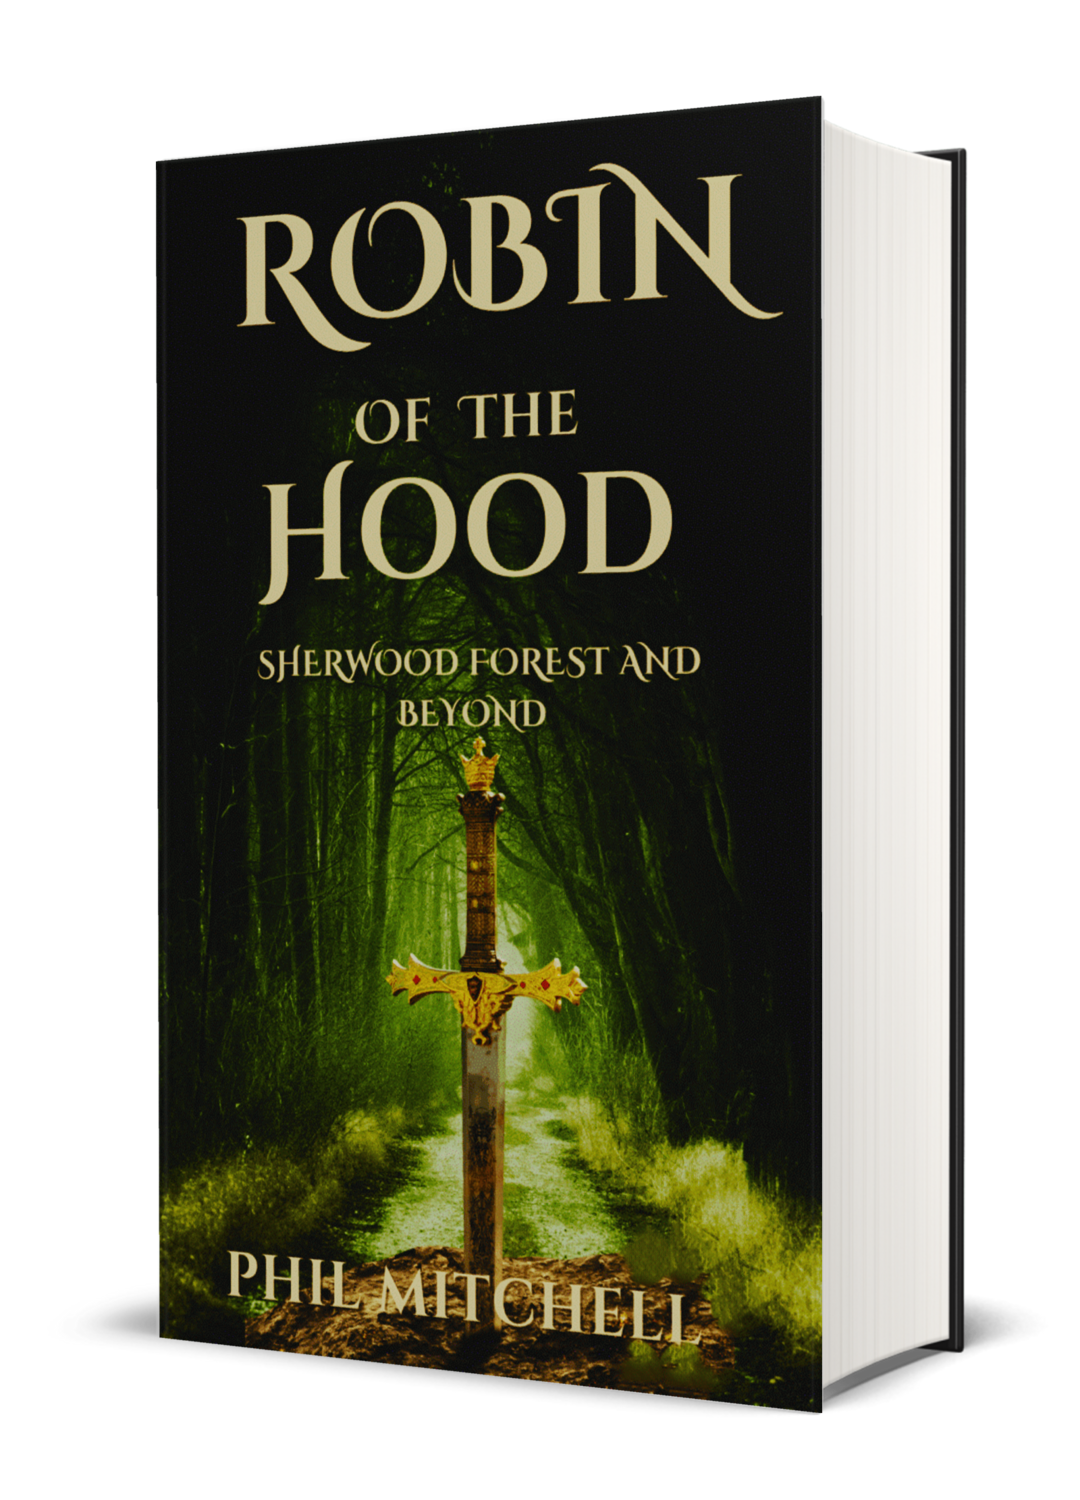 "eBook" Robin Hood